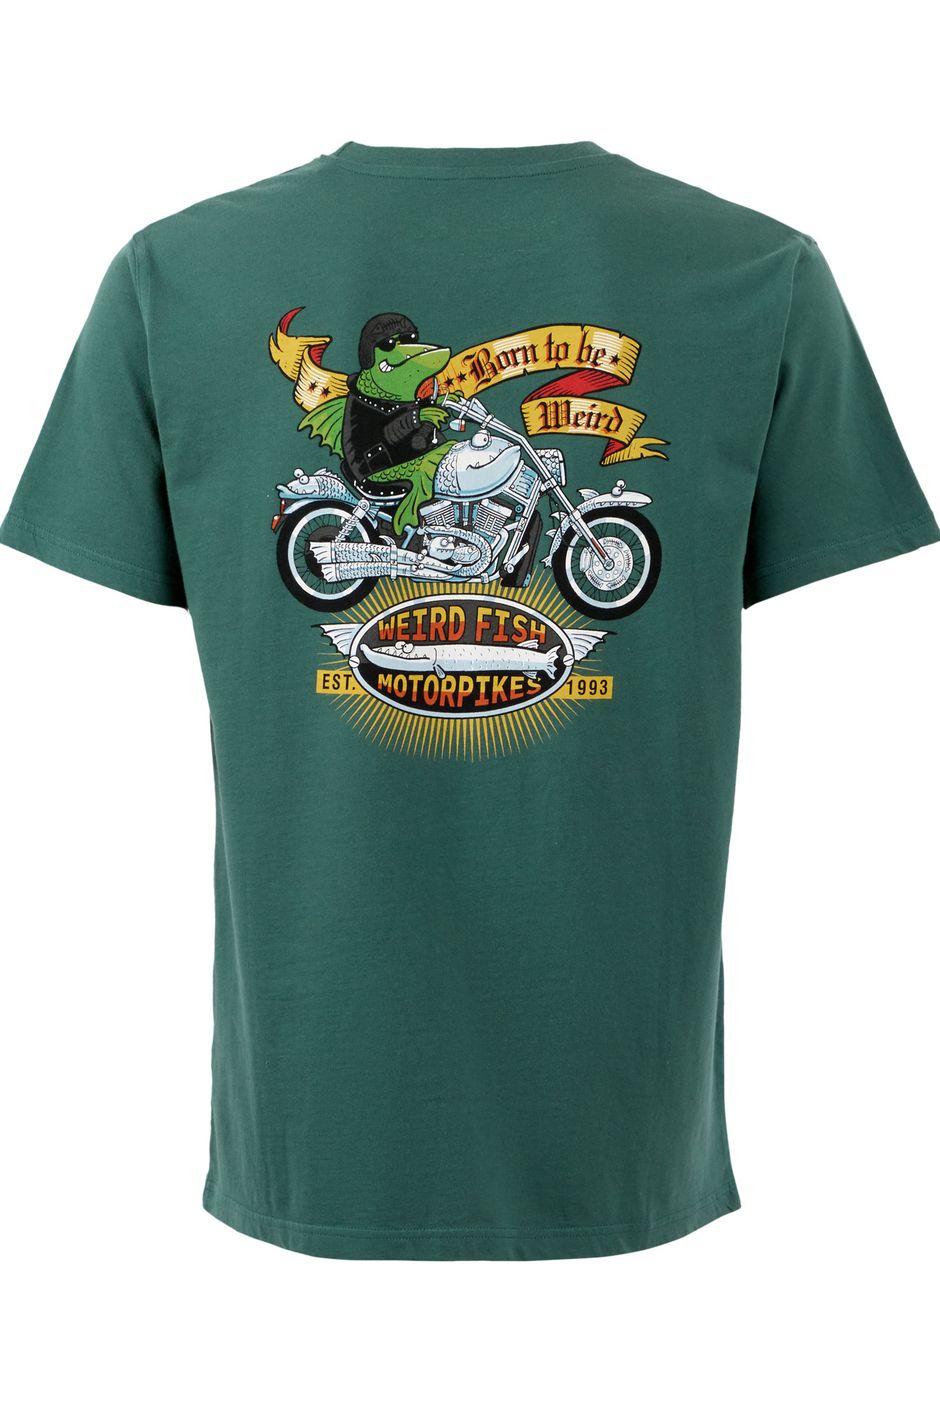 Motorpikes Artist T-Shirt Dark Green